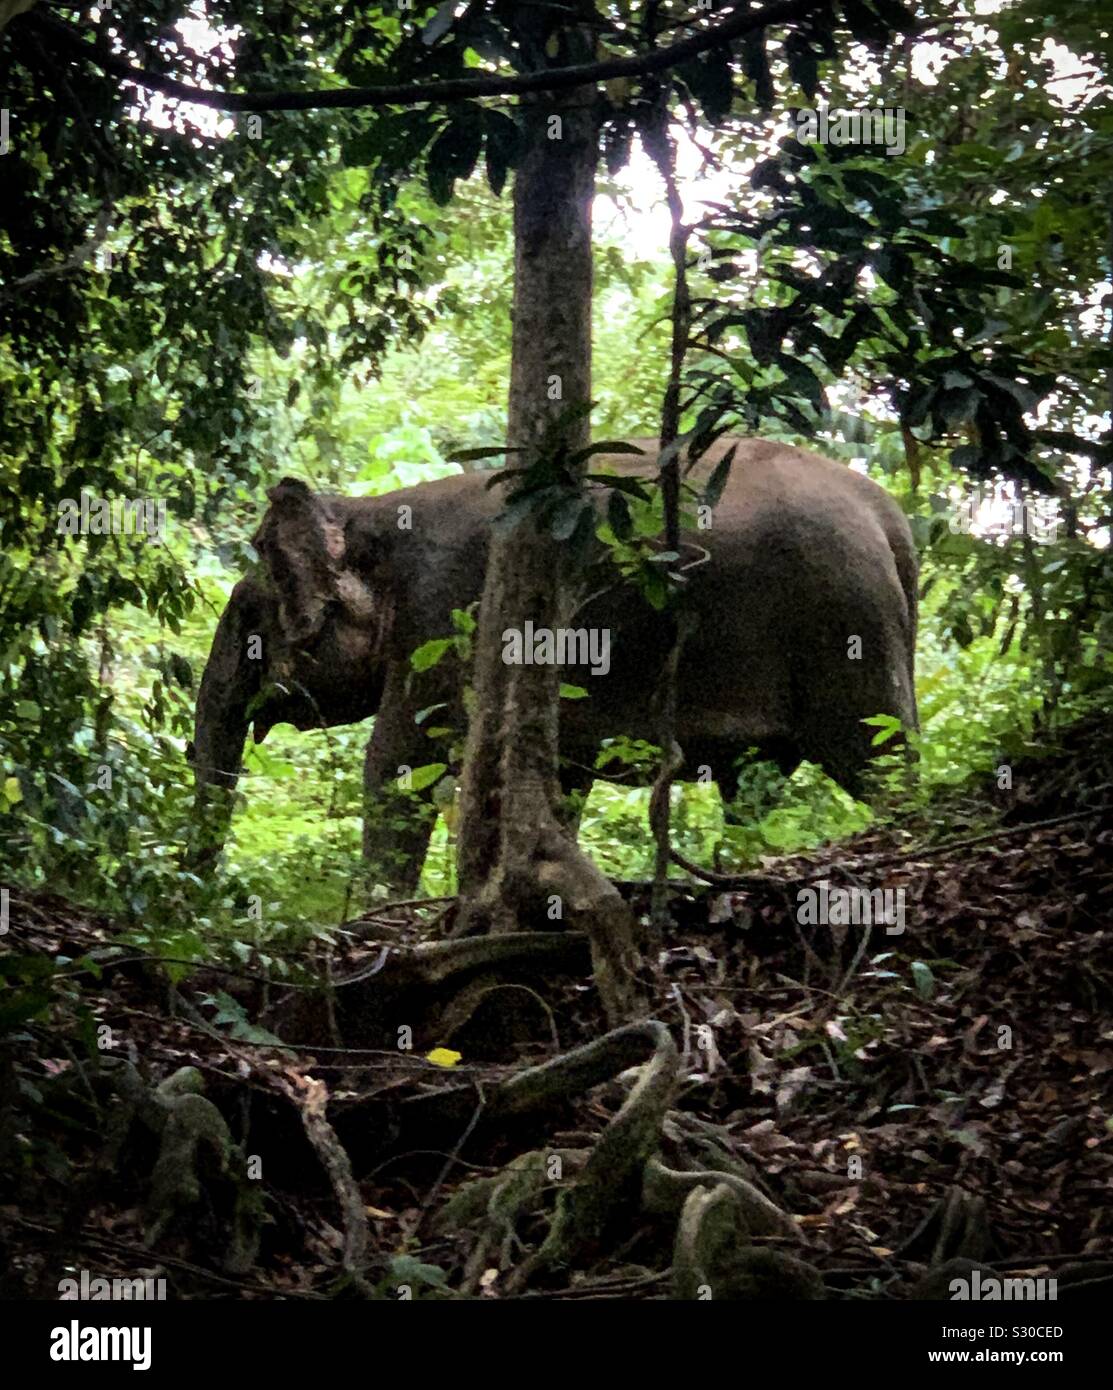 Wild Pygmy Elefanten Migration entlang Kinabatangan Fluss in Sukau, Borneo, Malaysia. Sukau ist ein beliebtes Ziel für die Fauna Bootstouren, weil Tiere in Scharen zu den dichten Regenwald. Stockfoto